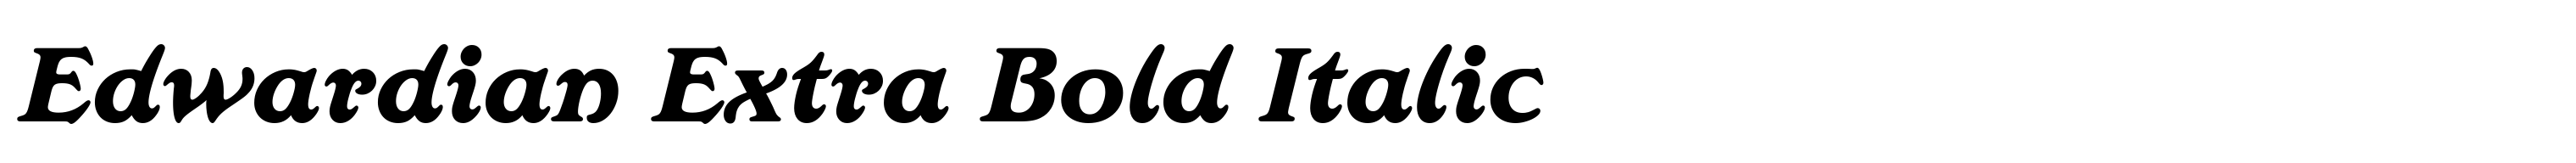 Edwardian Extra Bold Italic